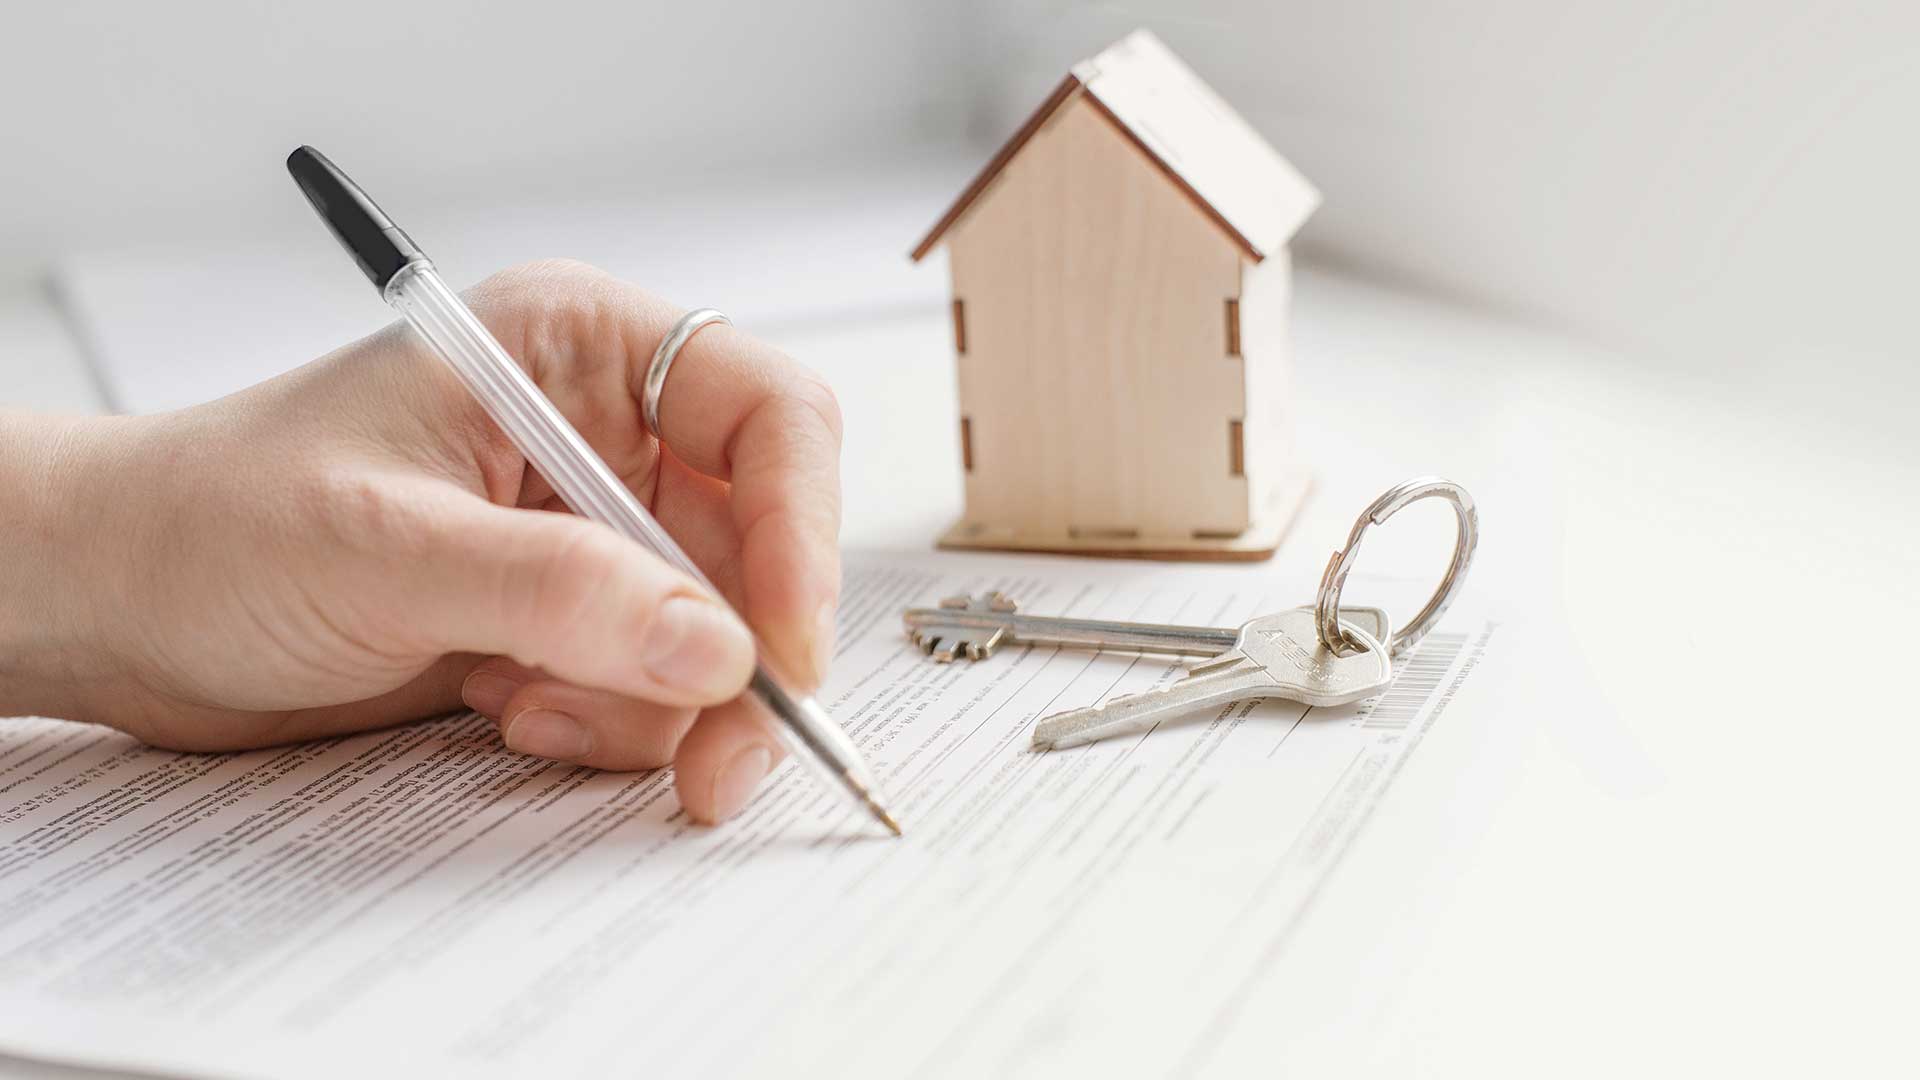 zbliżenie na dłoń podpisującą wniosek o wykreślenie hipoteki -  w 2021